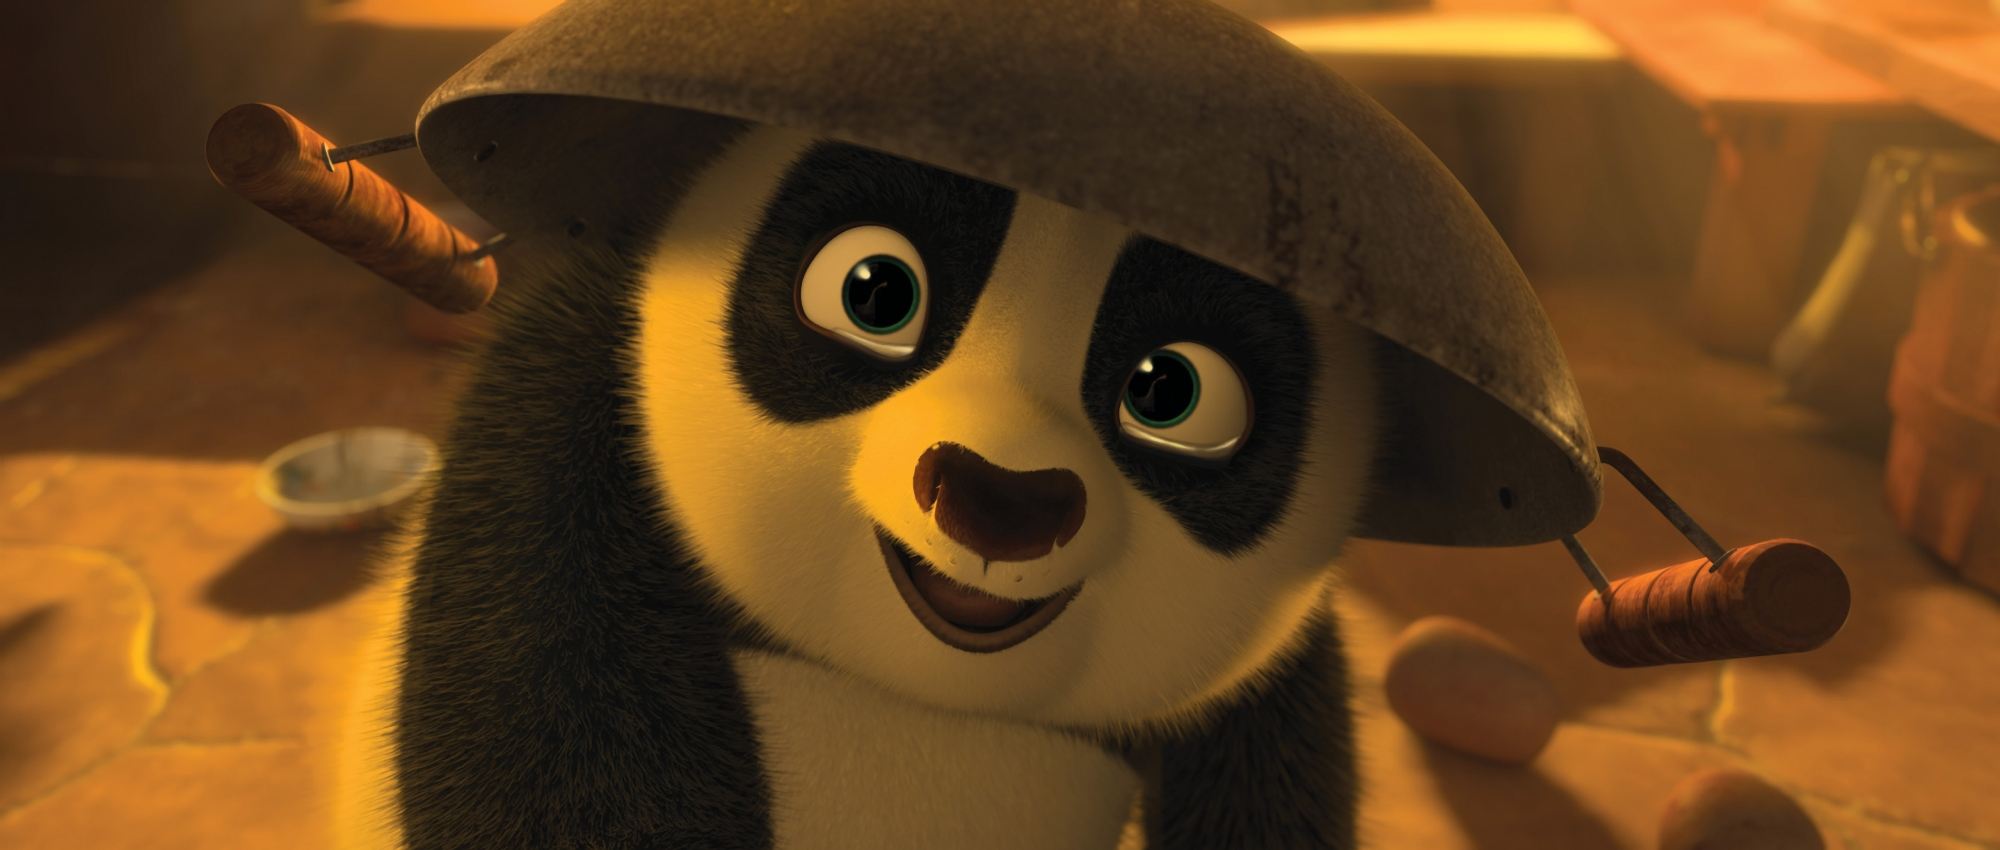 功夫熊猫2 kung fu panda 2 (2011)导演: 余仁英 萌萌哒